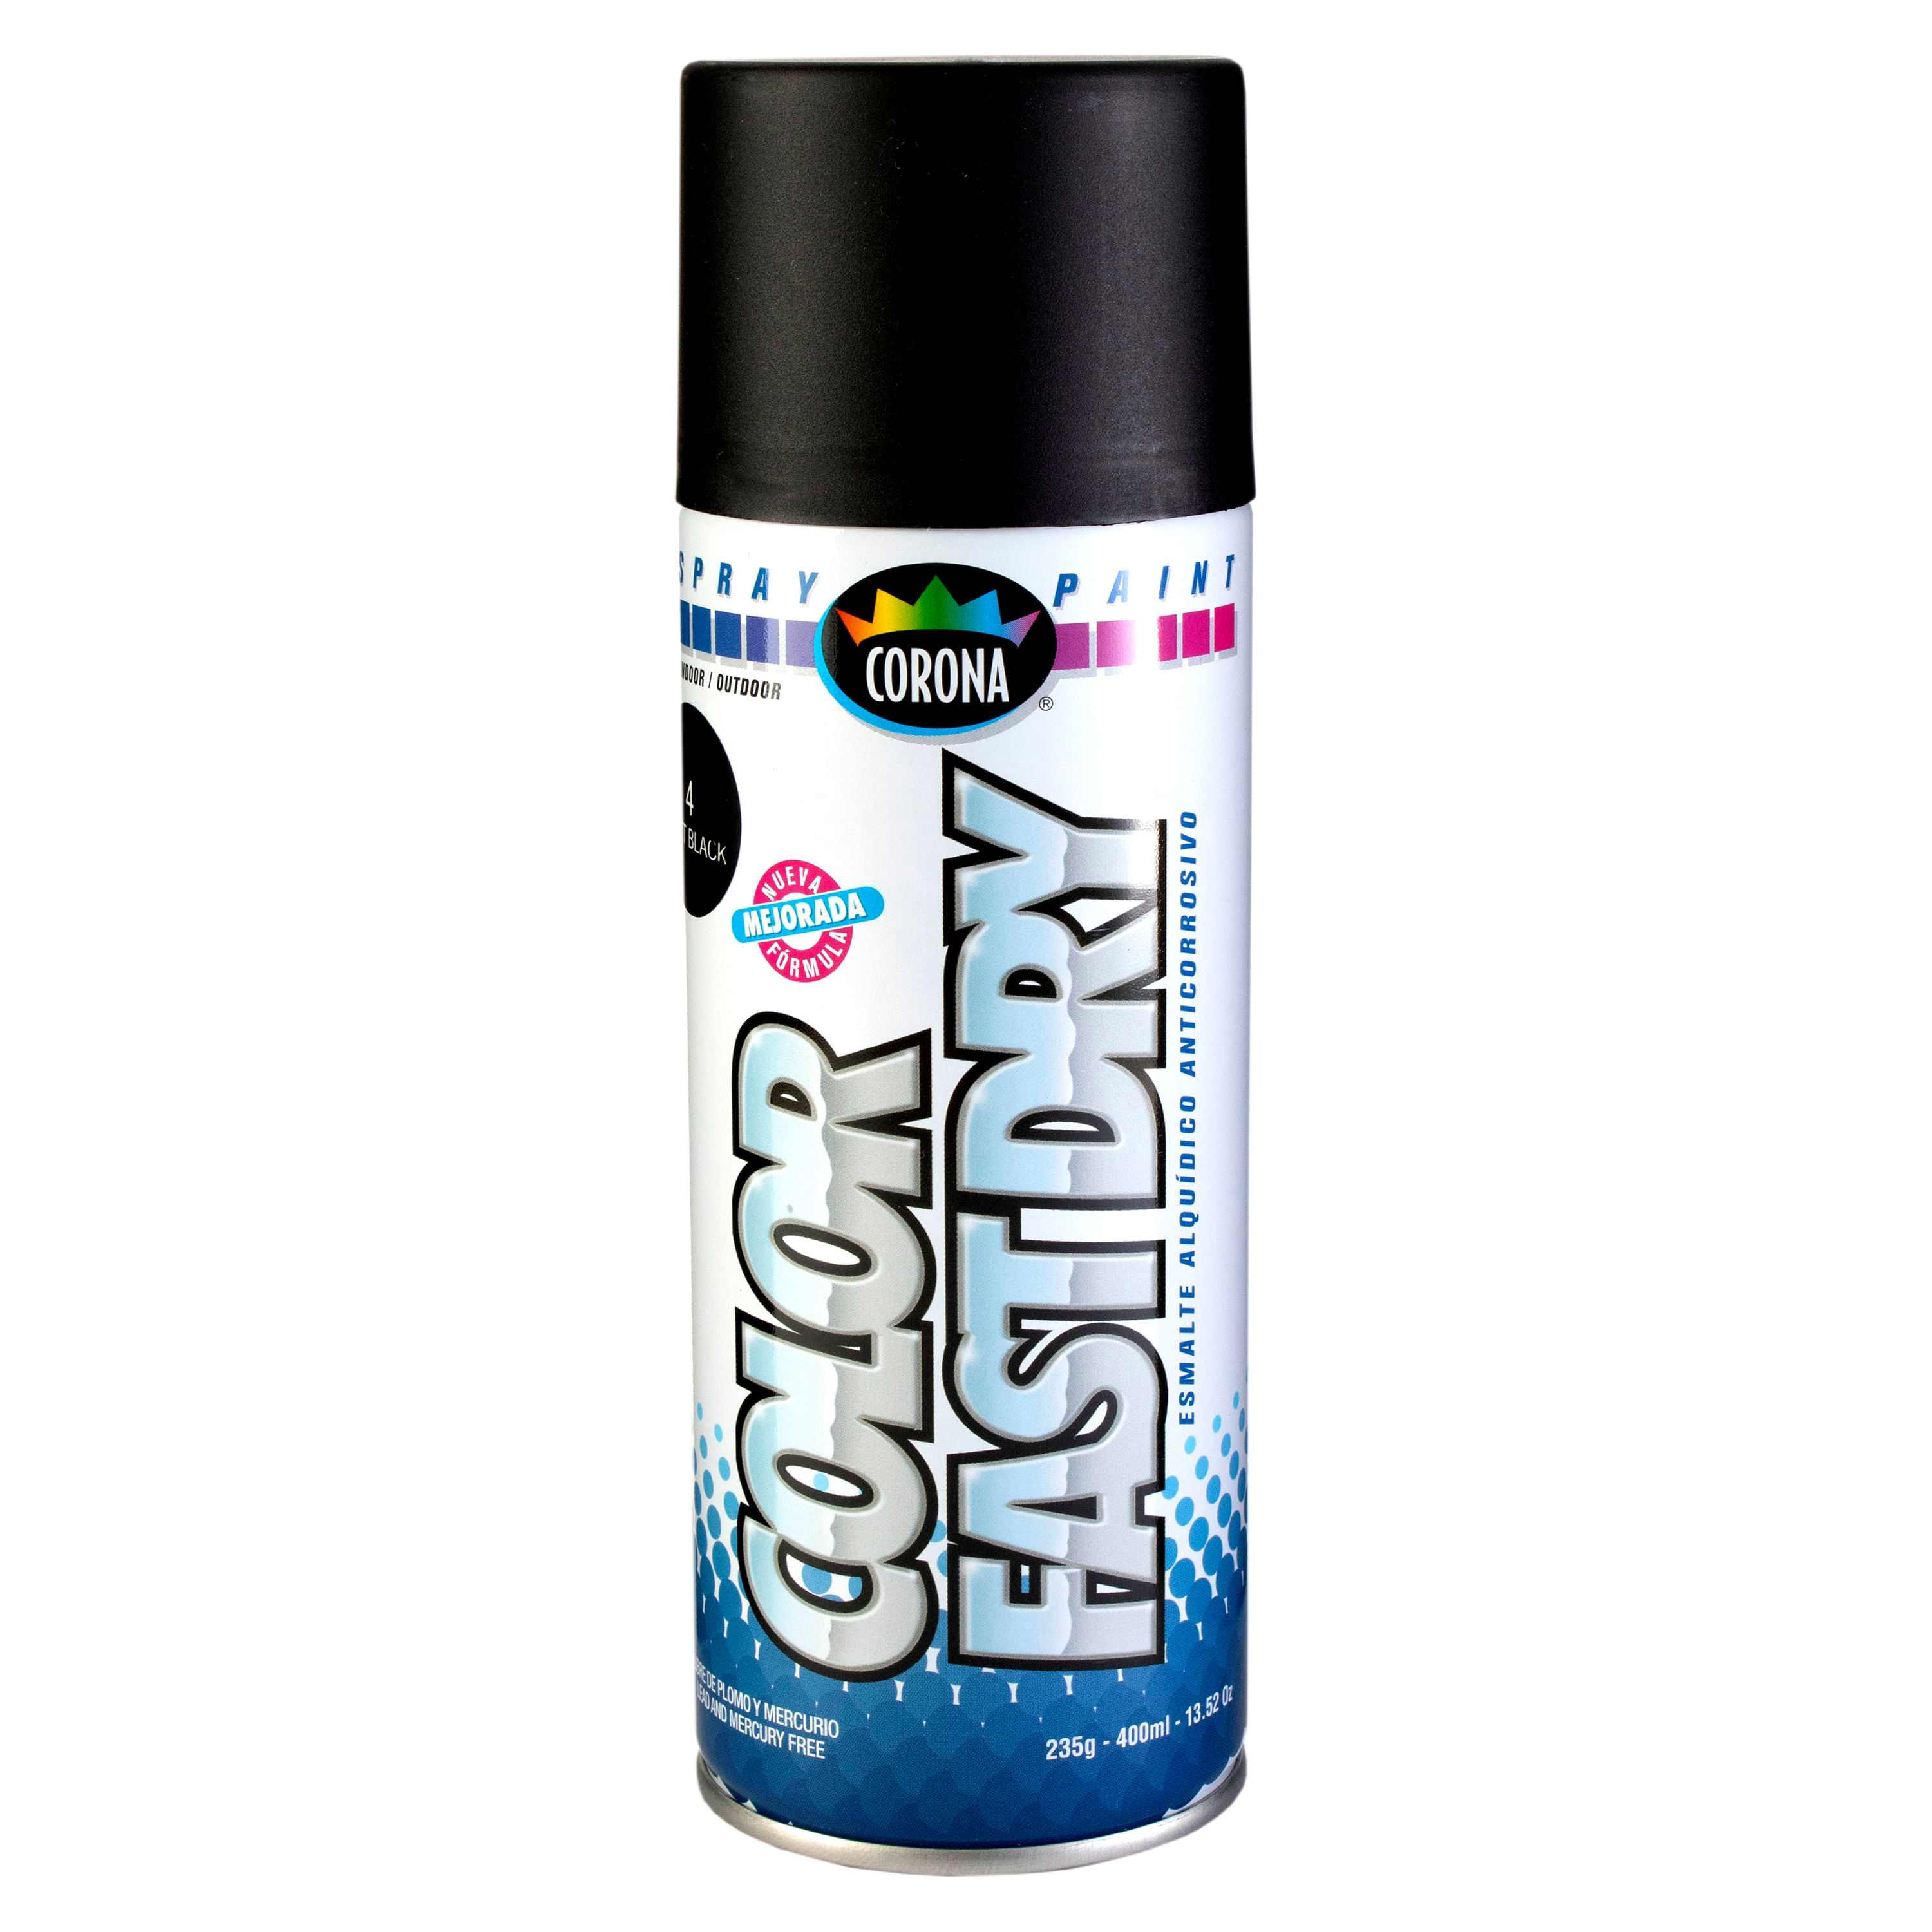 Larach y Cia : Pintura Spray Premium 12onz Negro Anticorrosivo para Pintar  Metales